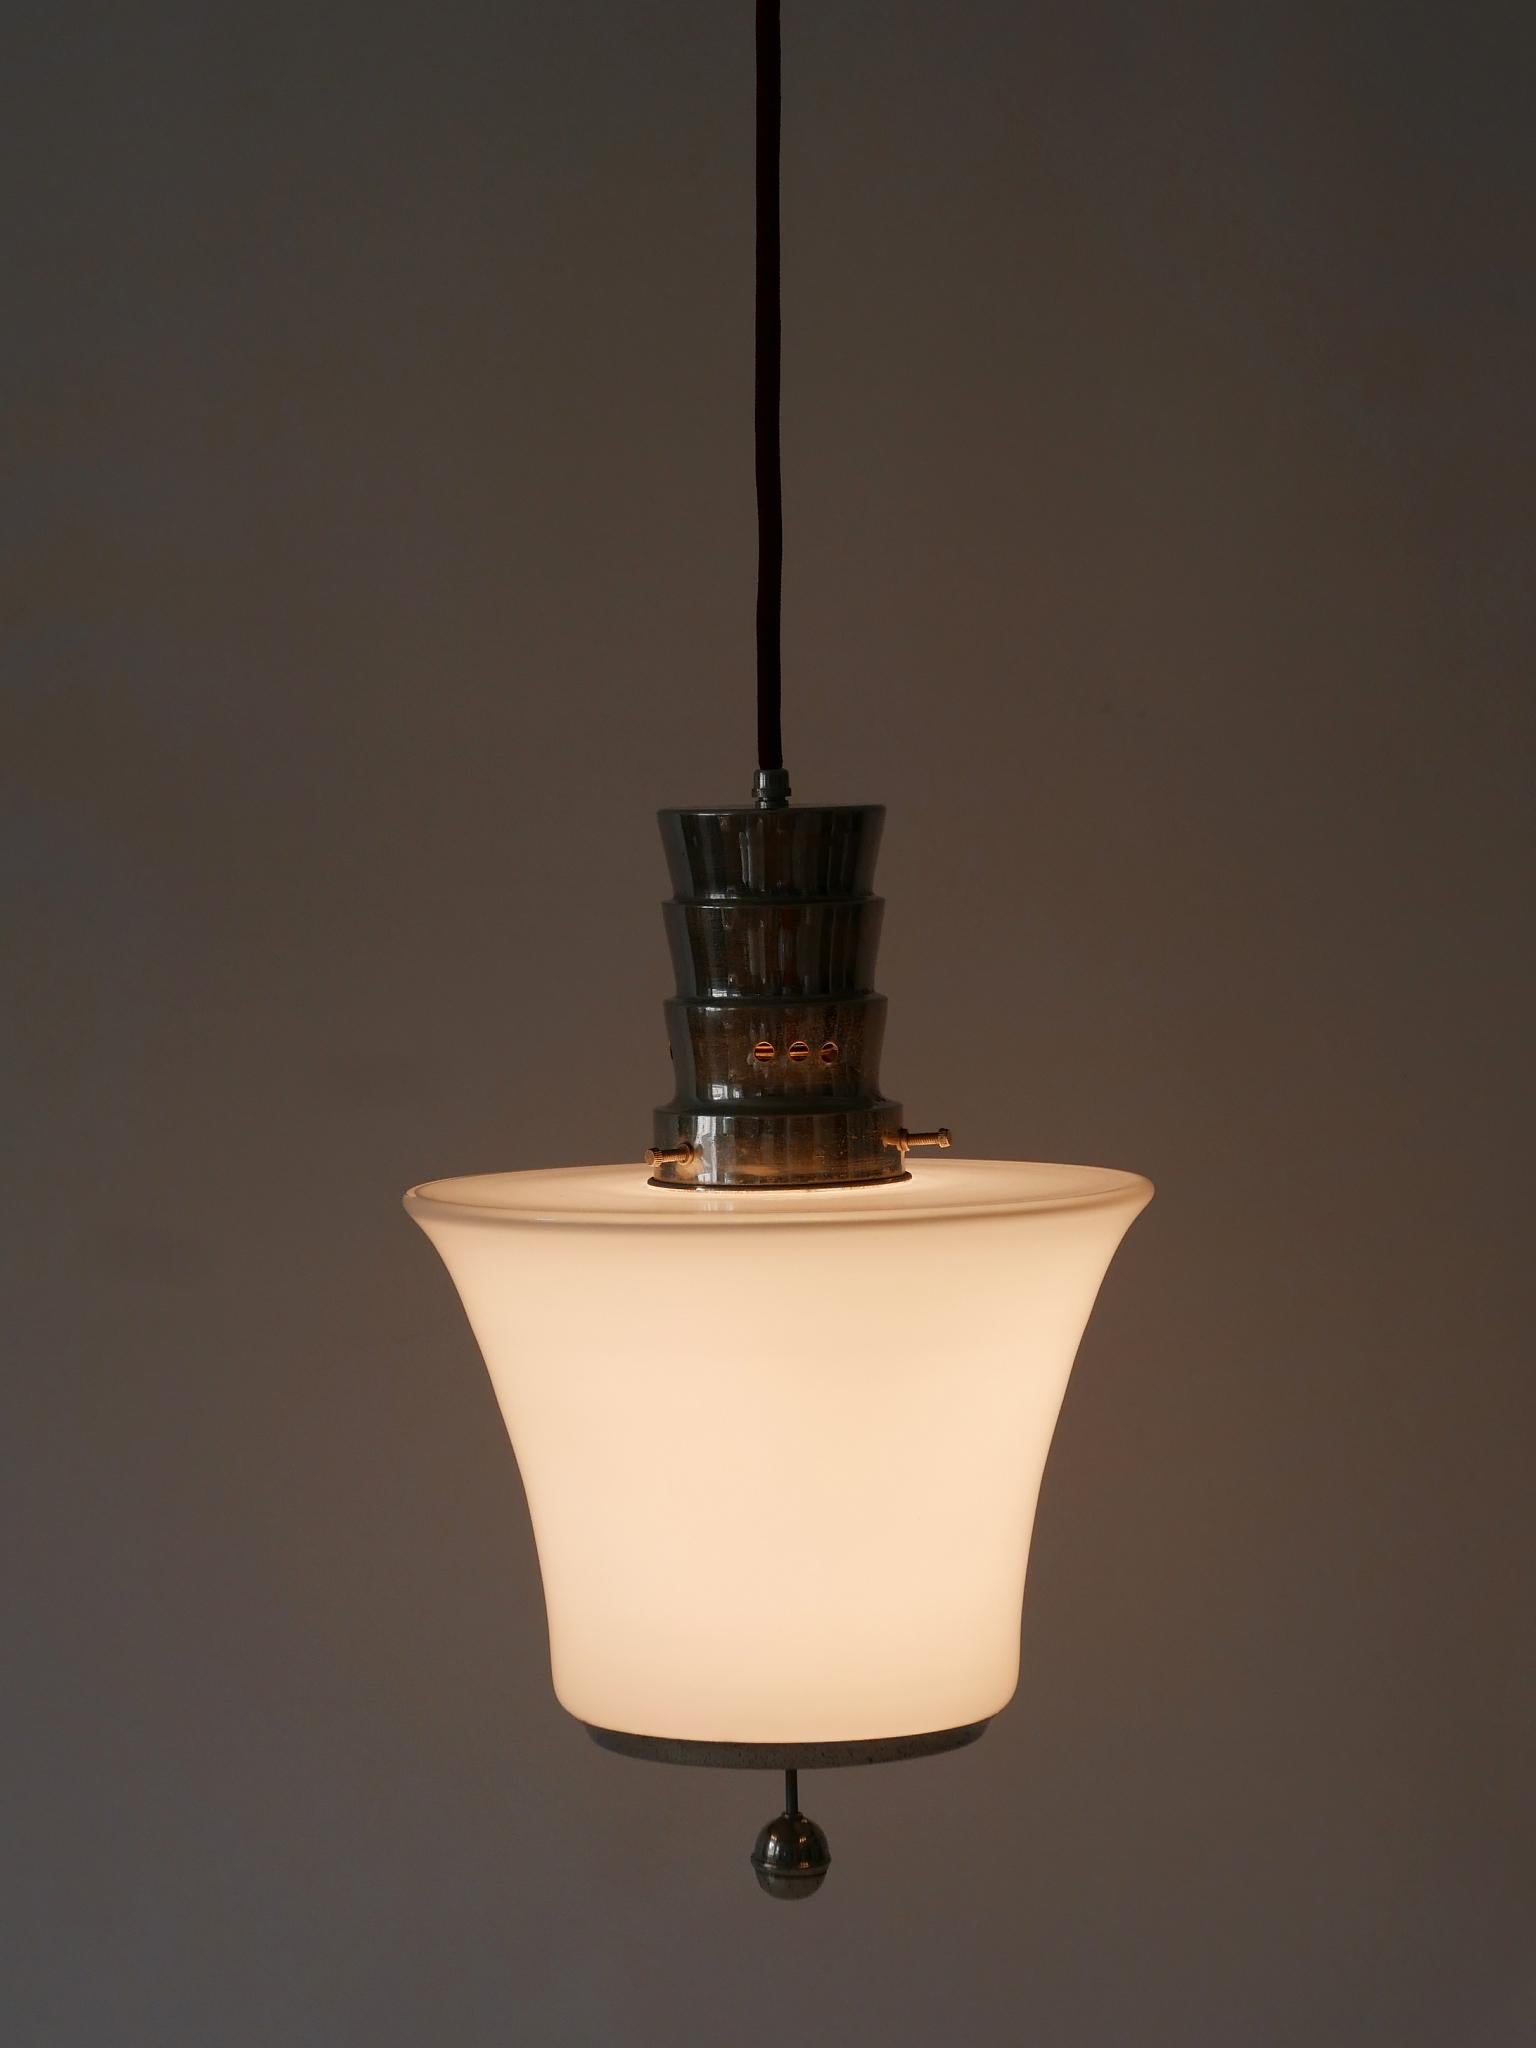 Exceptional Dr. Twerdy Original Bauhaus Art Deco Pendant Lamp, 1920s, Germany For Sale 4